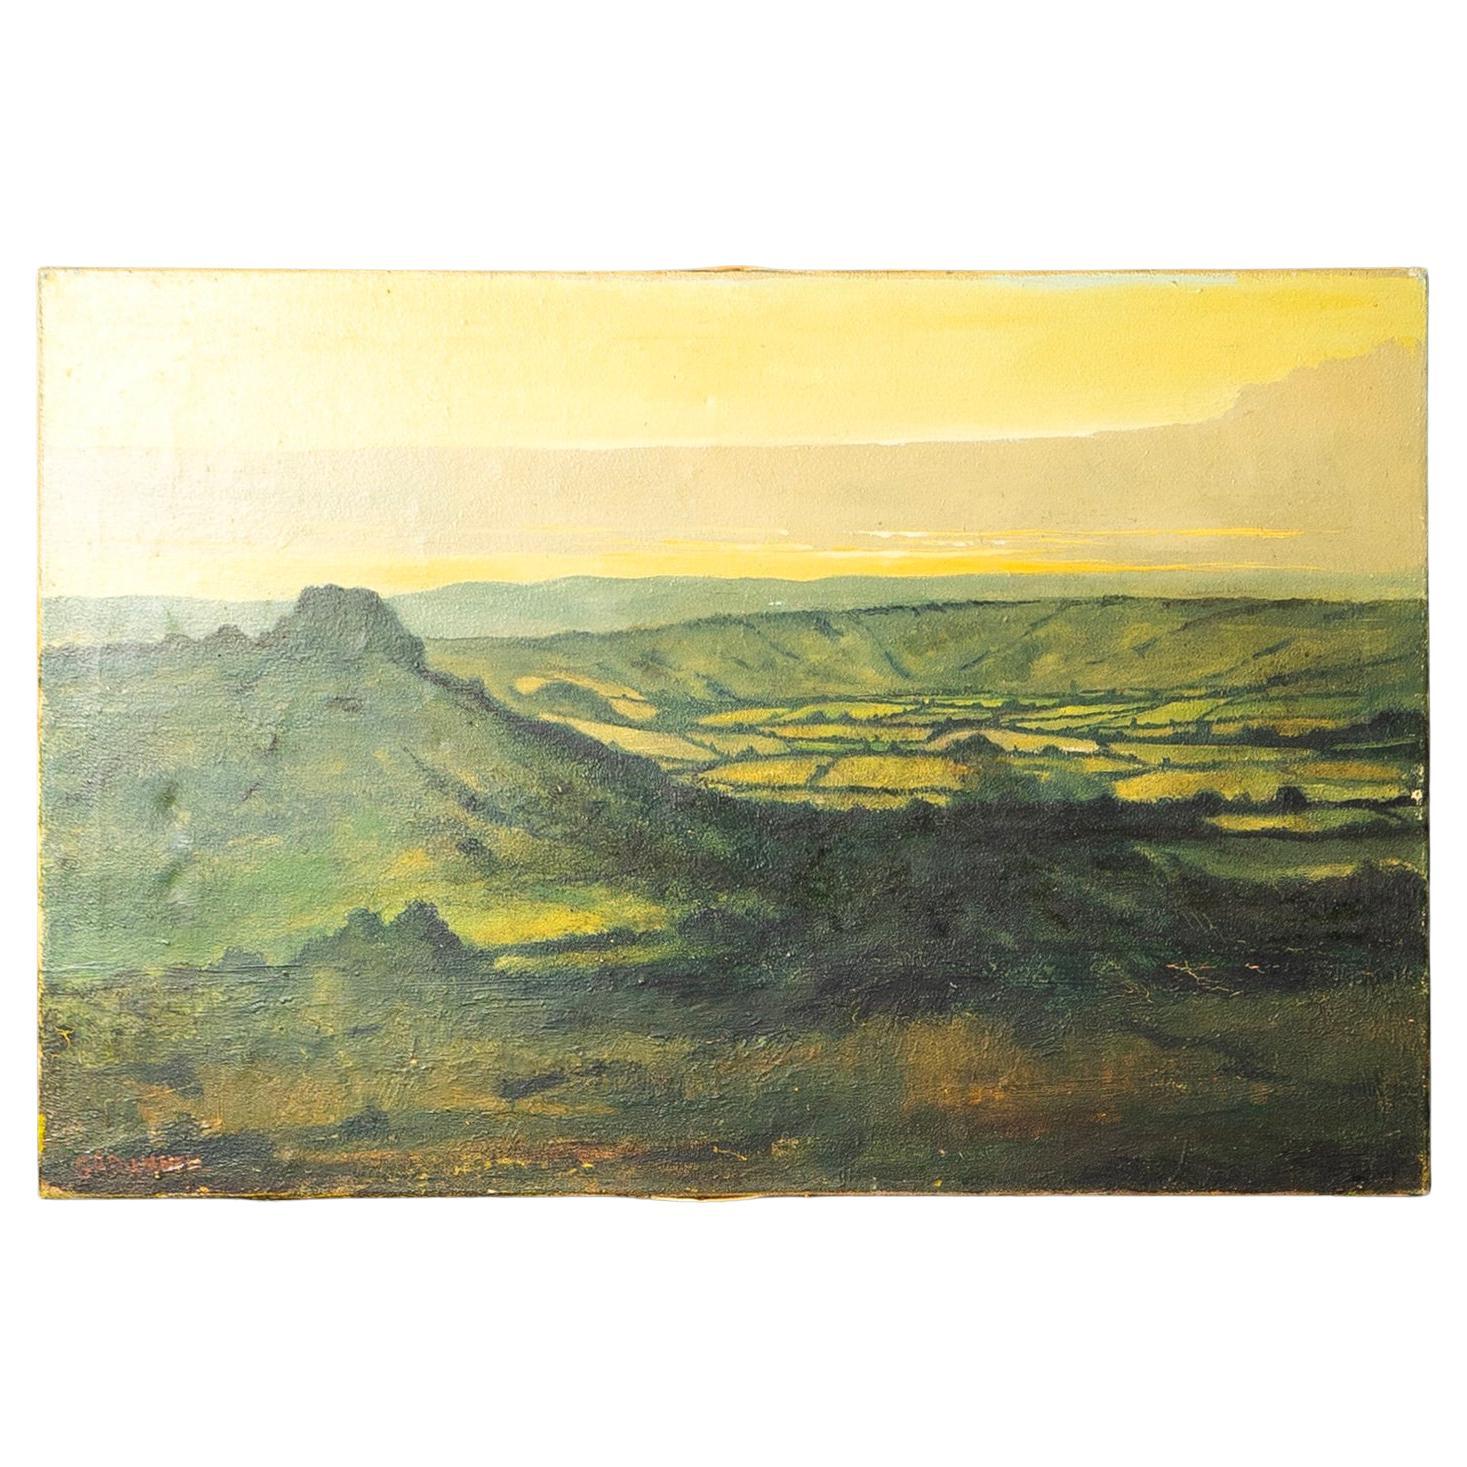 Paysage rural ancien peinture à l'huile sur toile, début du 20e siècle